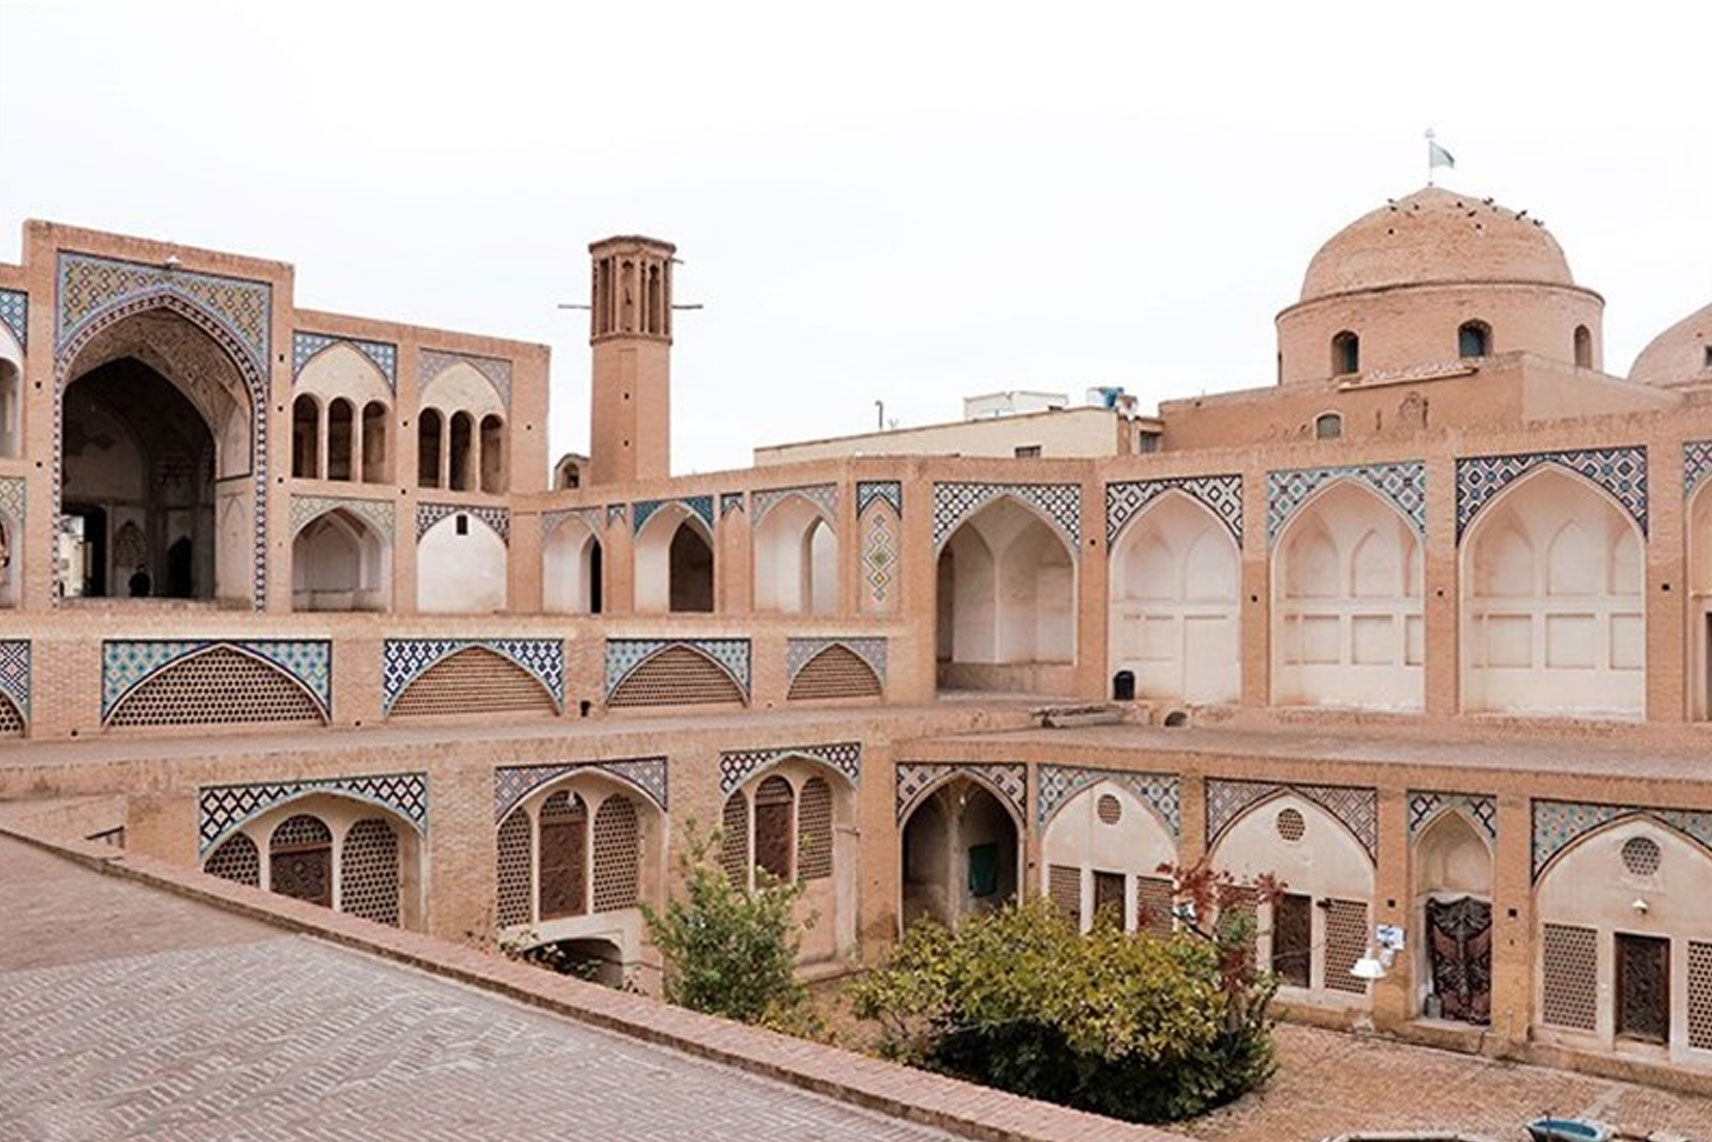 تخریب سازه غیرمجاز در حریم مسجد آقابزرگ کاشان